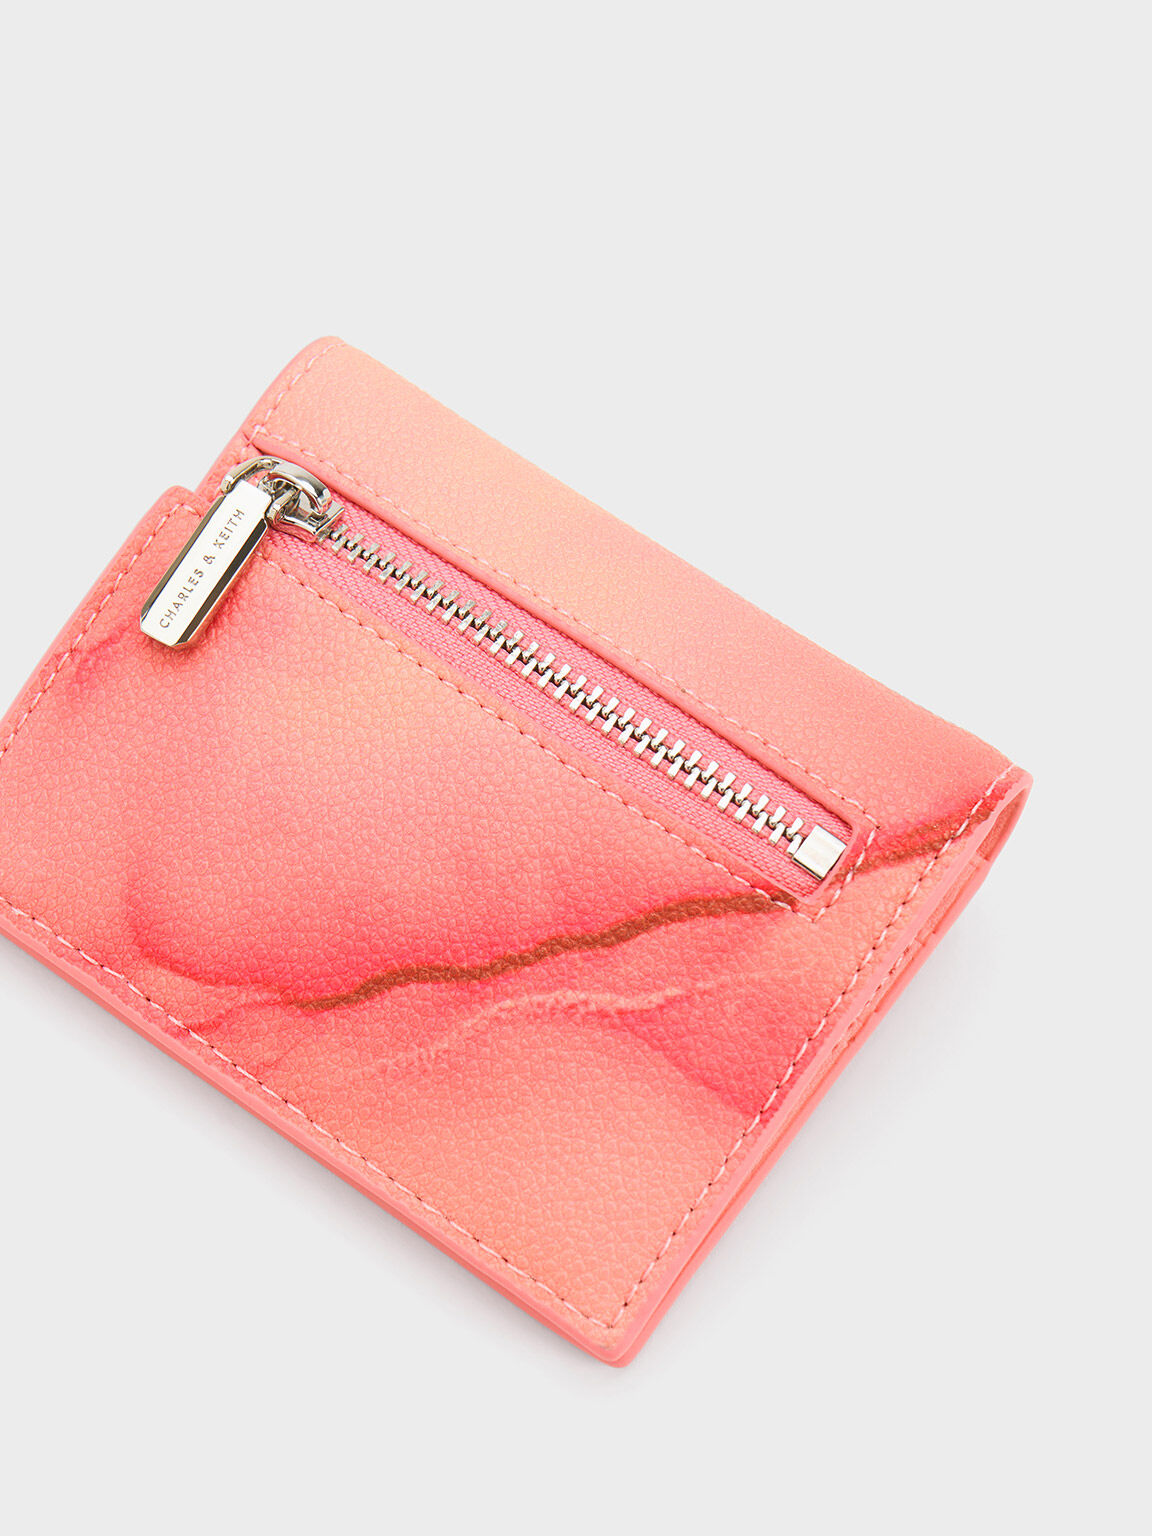 Wallets for Women Kawaii Cute Wallet Luxury Designer Lady Wallet Pink Purse  Womens Wallet Small Women